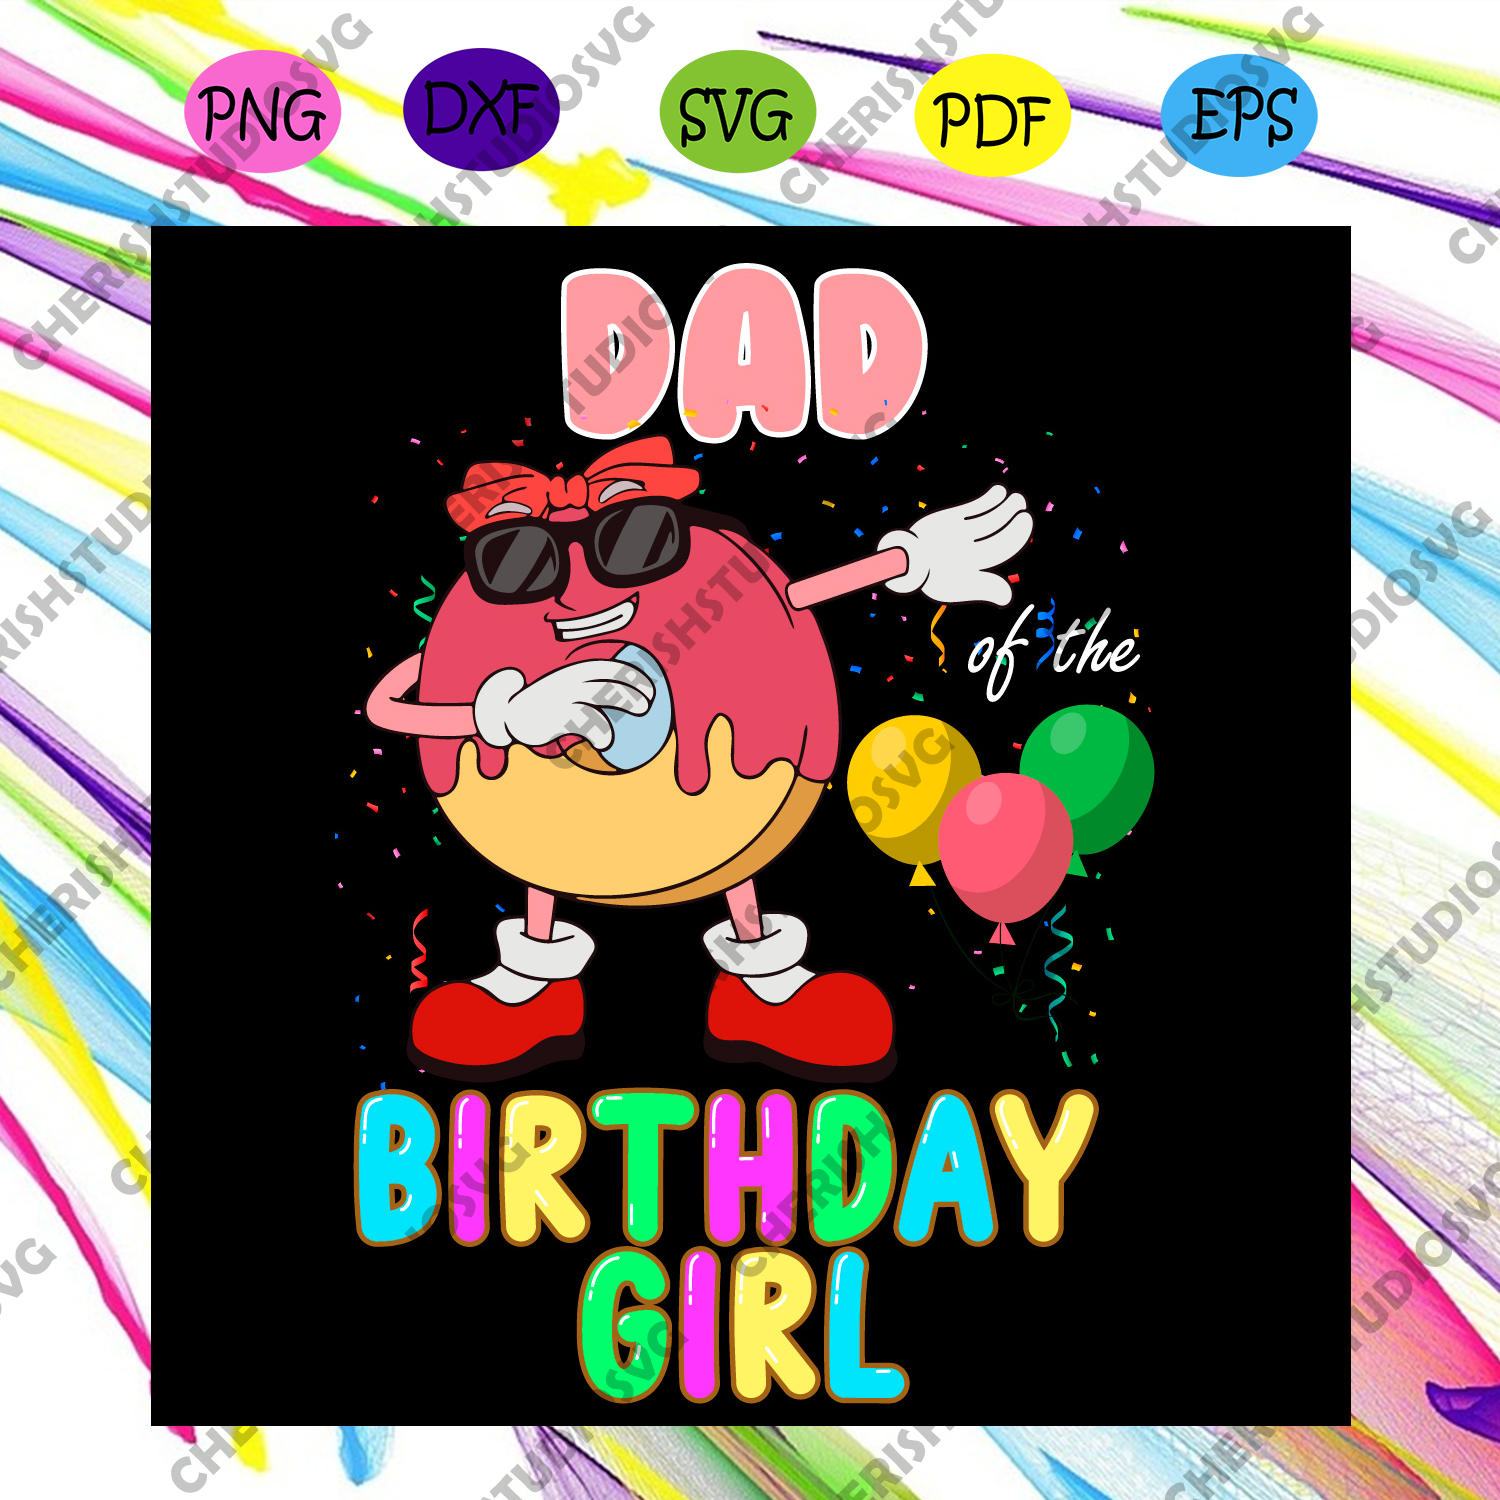 Download Dad Birthday Girl Svg Birthday Svg Dad Svg Birthday Girl Svg Daddi Cherishsvgstudio